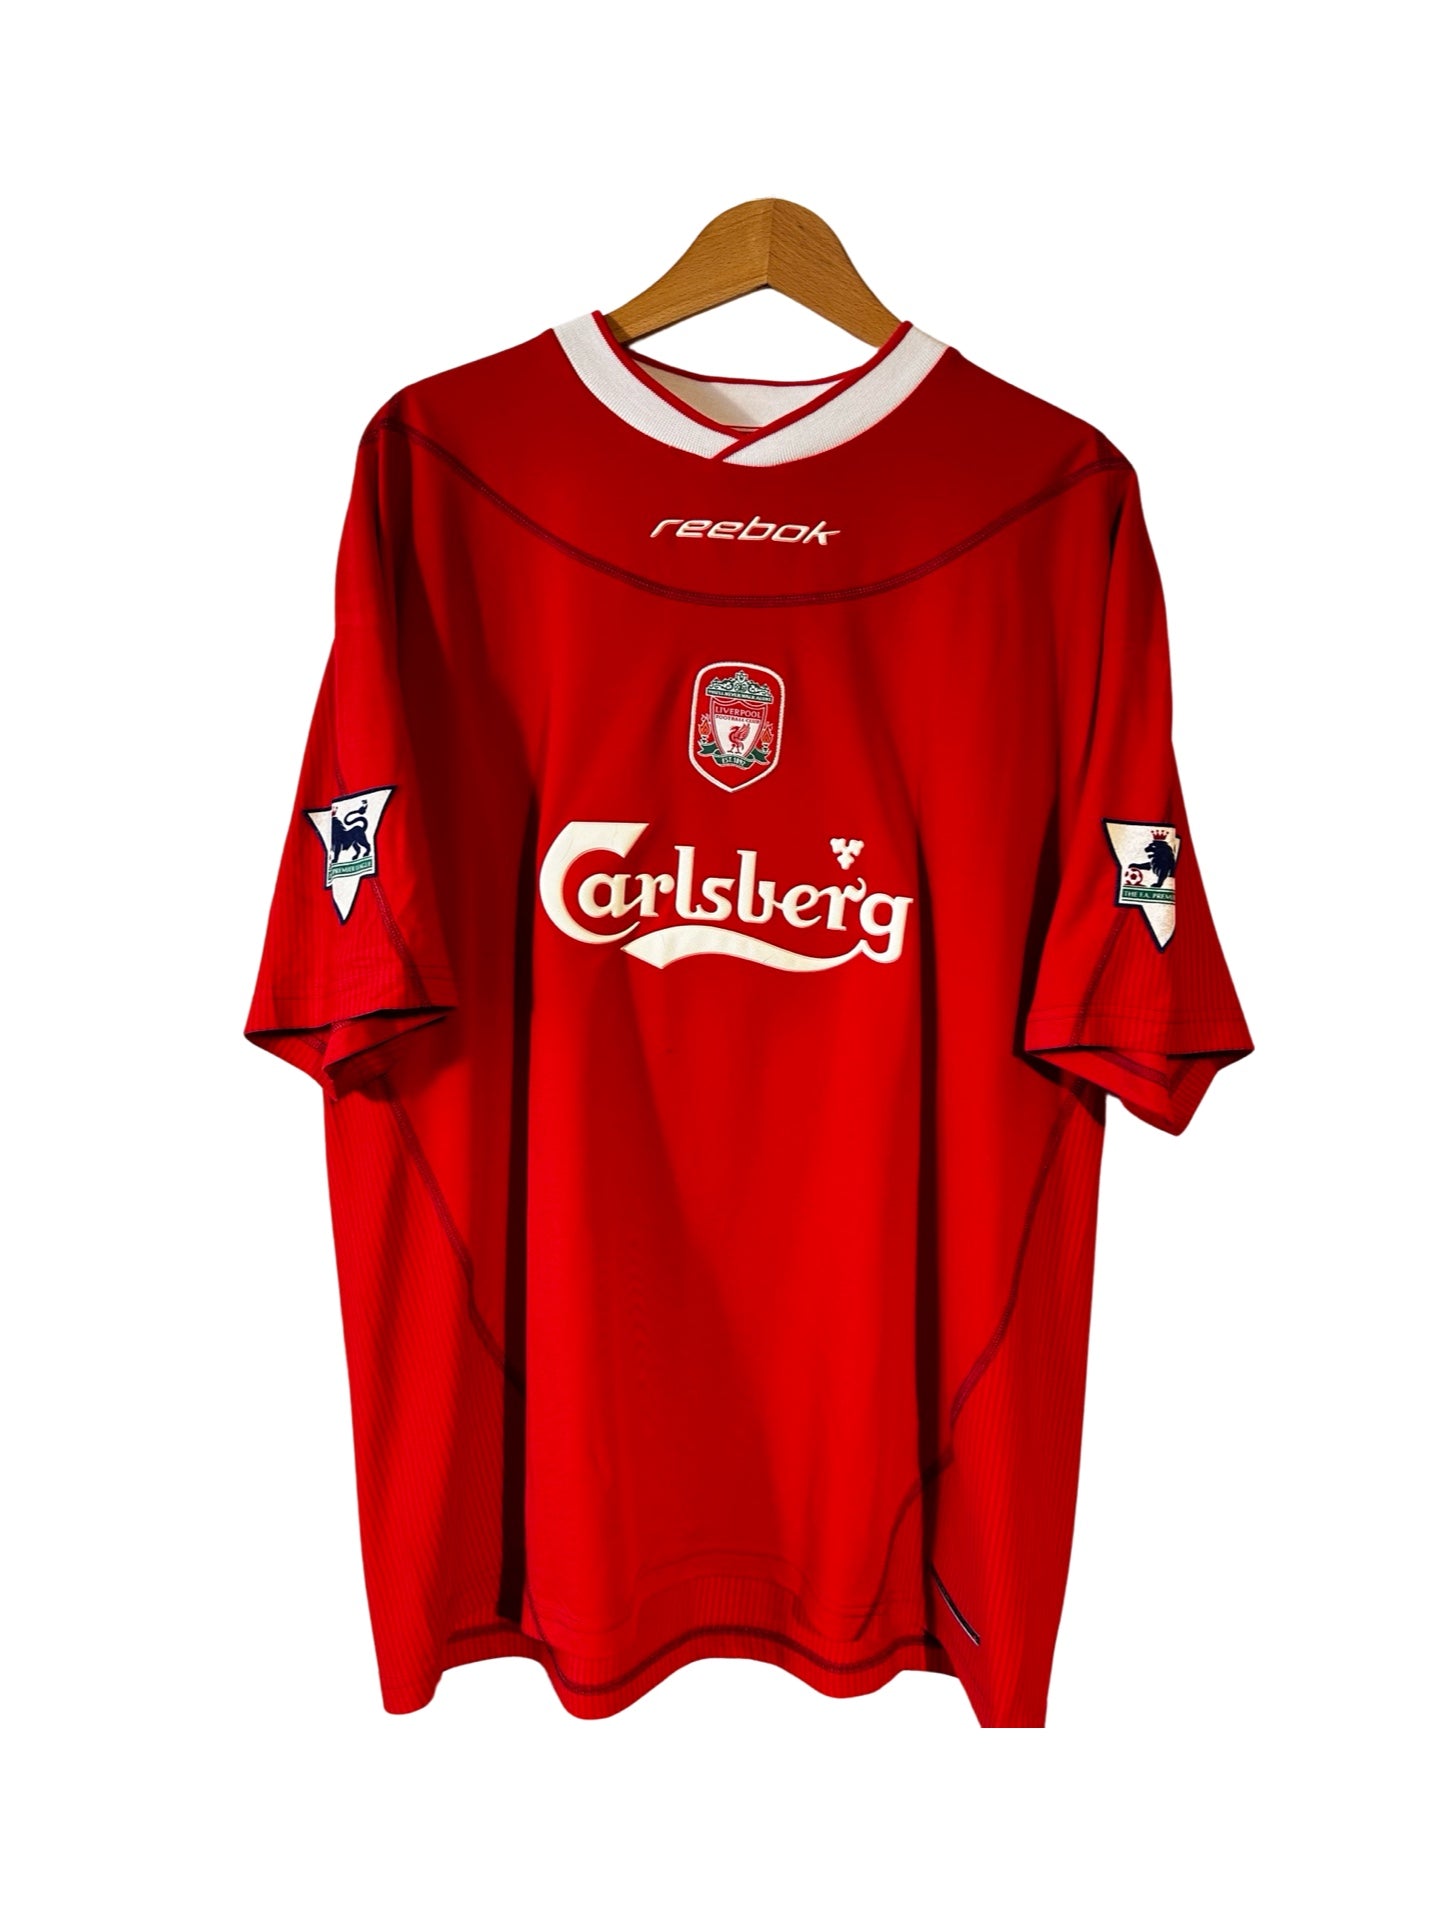 Liverpool FC 2002-03 Home Shirt, #17 Steven Gerrard - XL